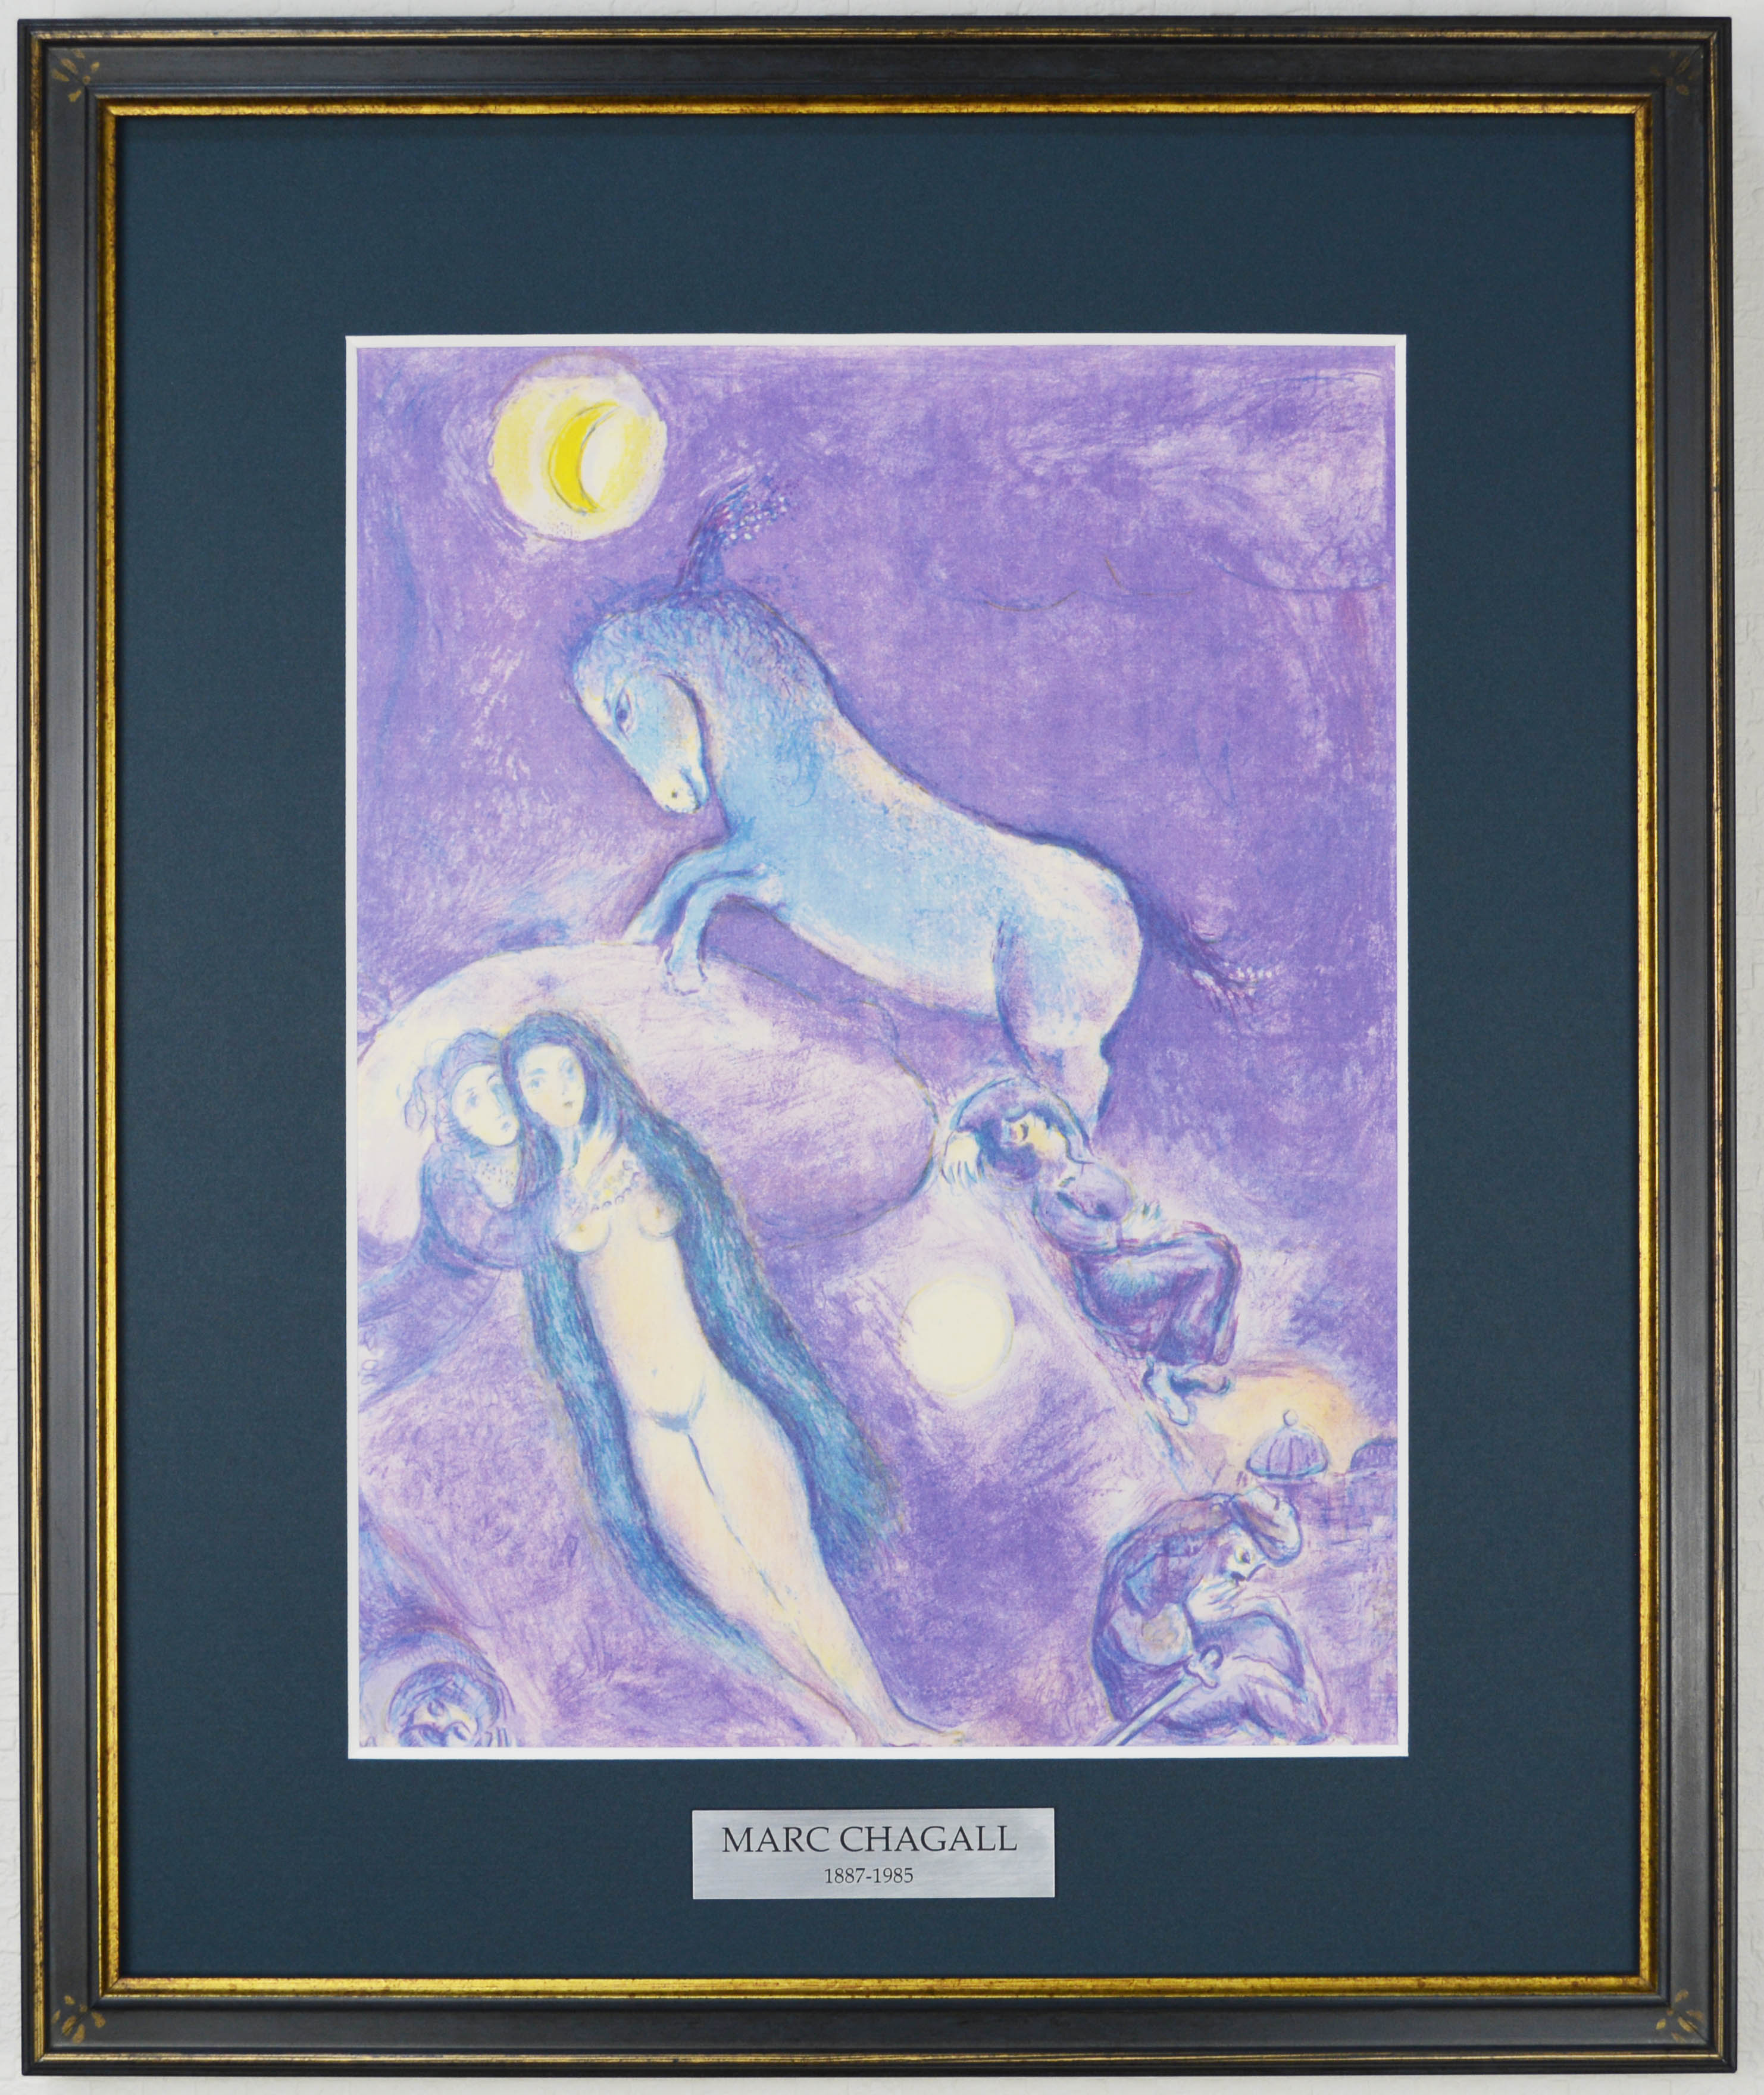 マルク シャガール 『黒檀の馬 Ⅱ【 アラビアンナイト 】』 絵画 1988